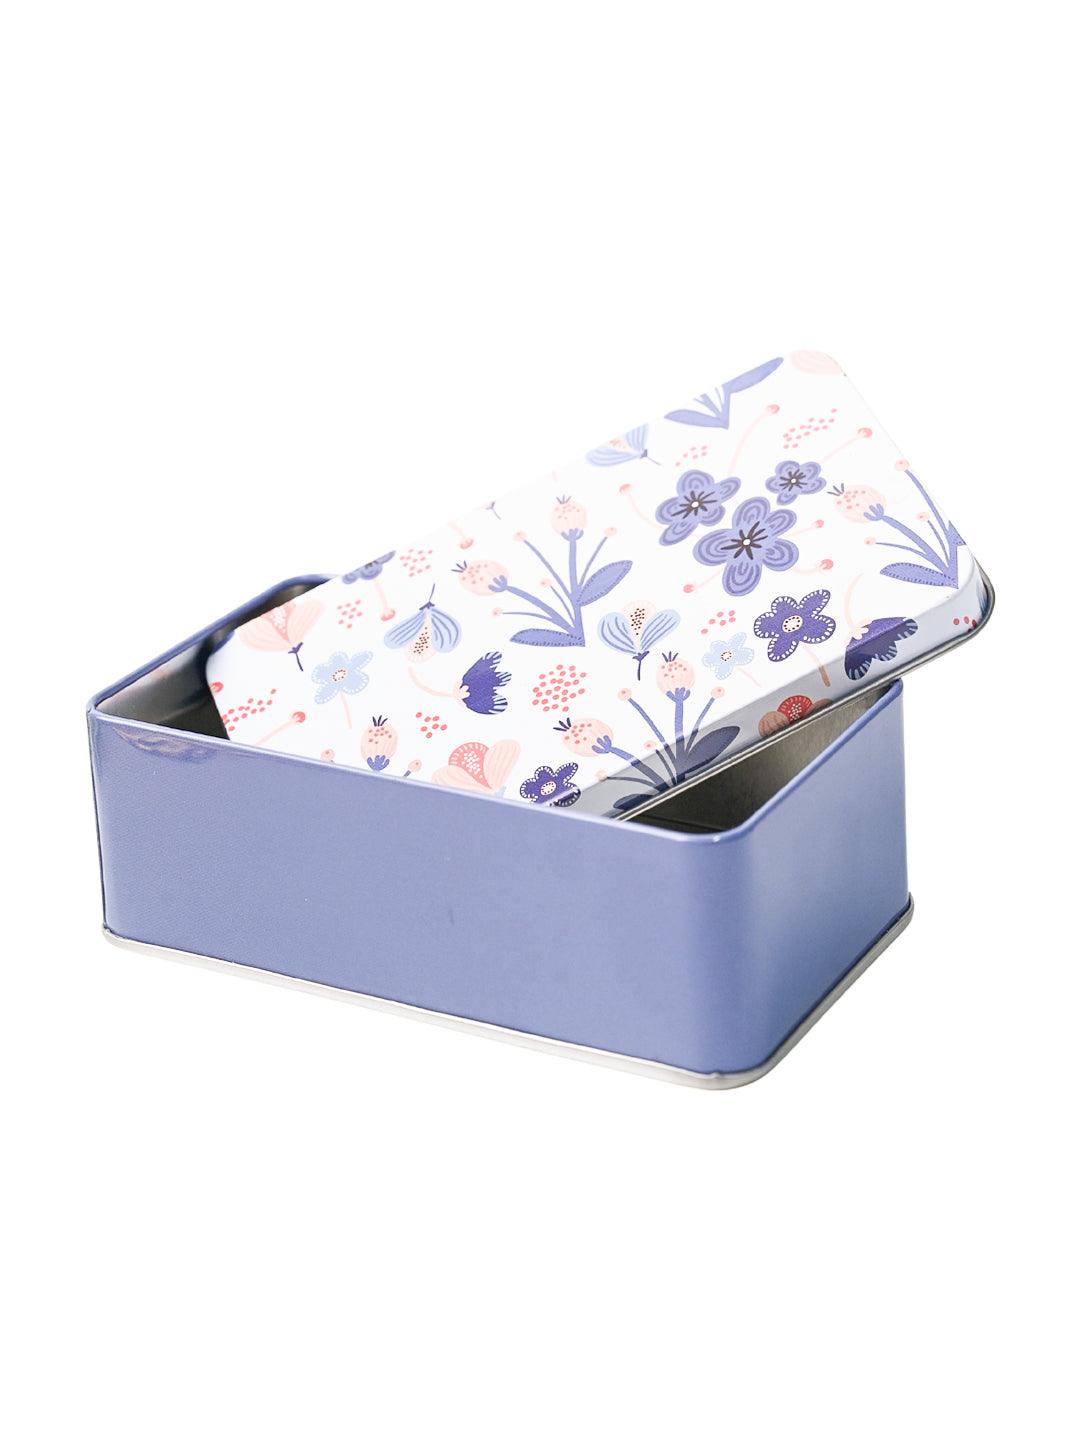 Mini Floral Tin Storage Box - Set Of 3, White - MARKET99